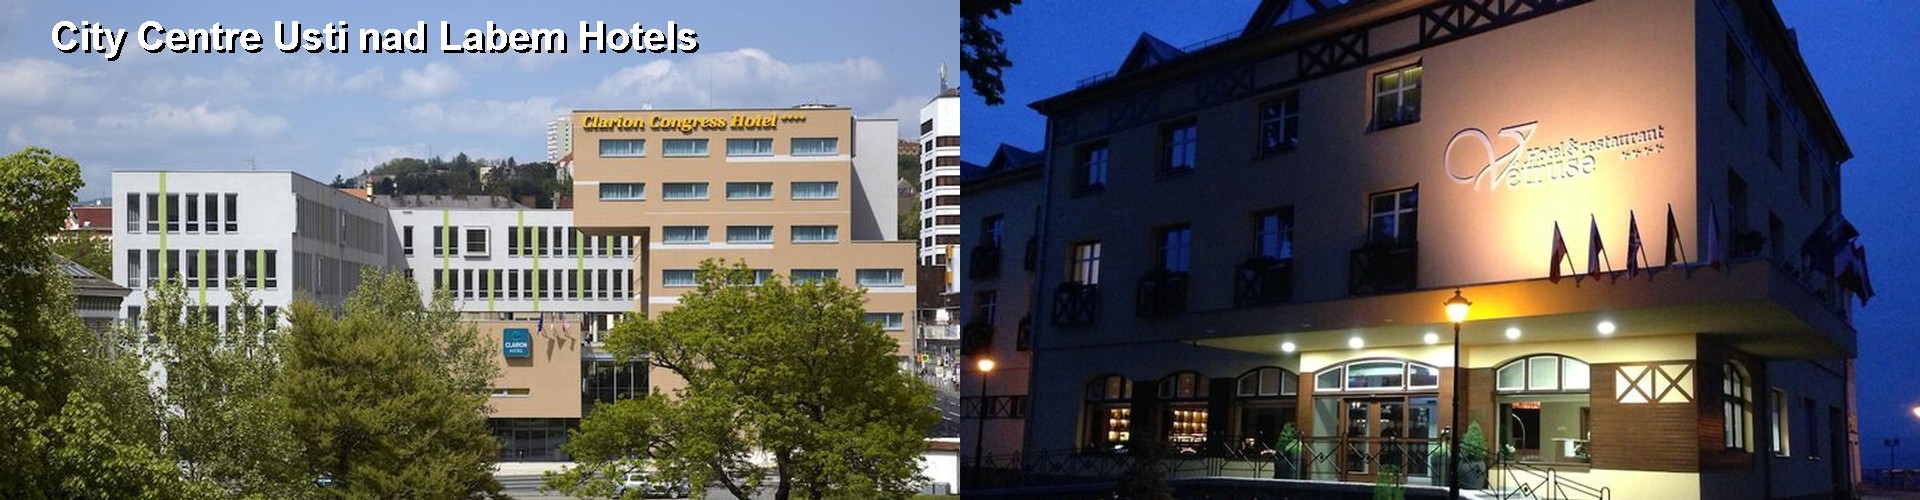 5 Best Hotels near City Centre Usti nad Labem